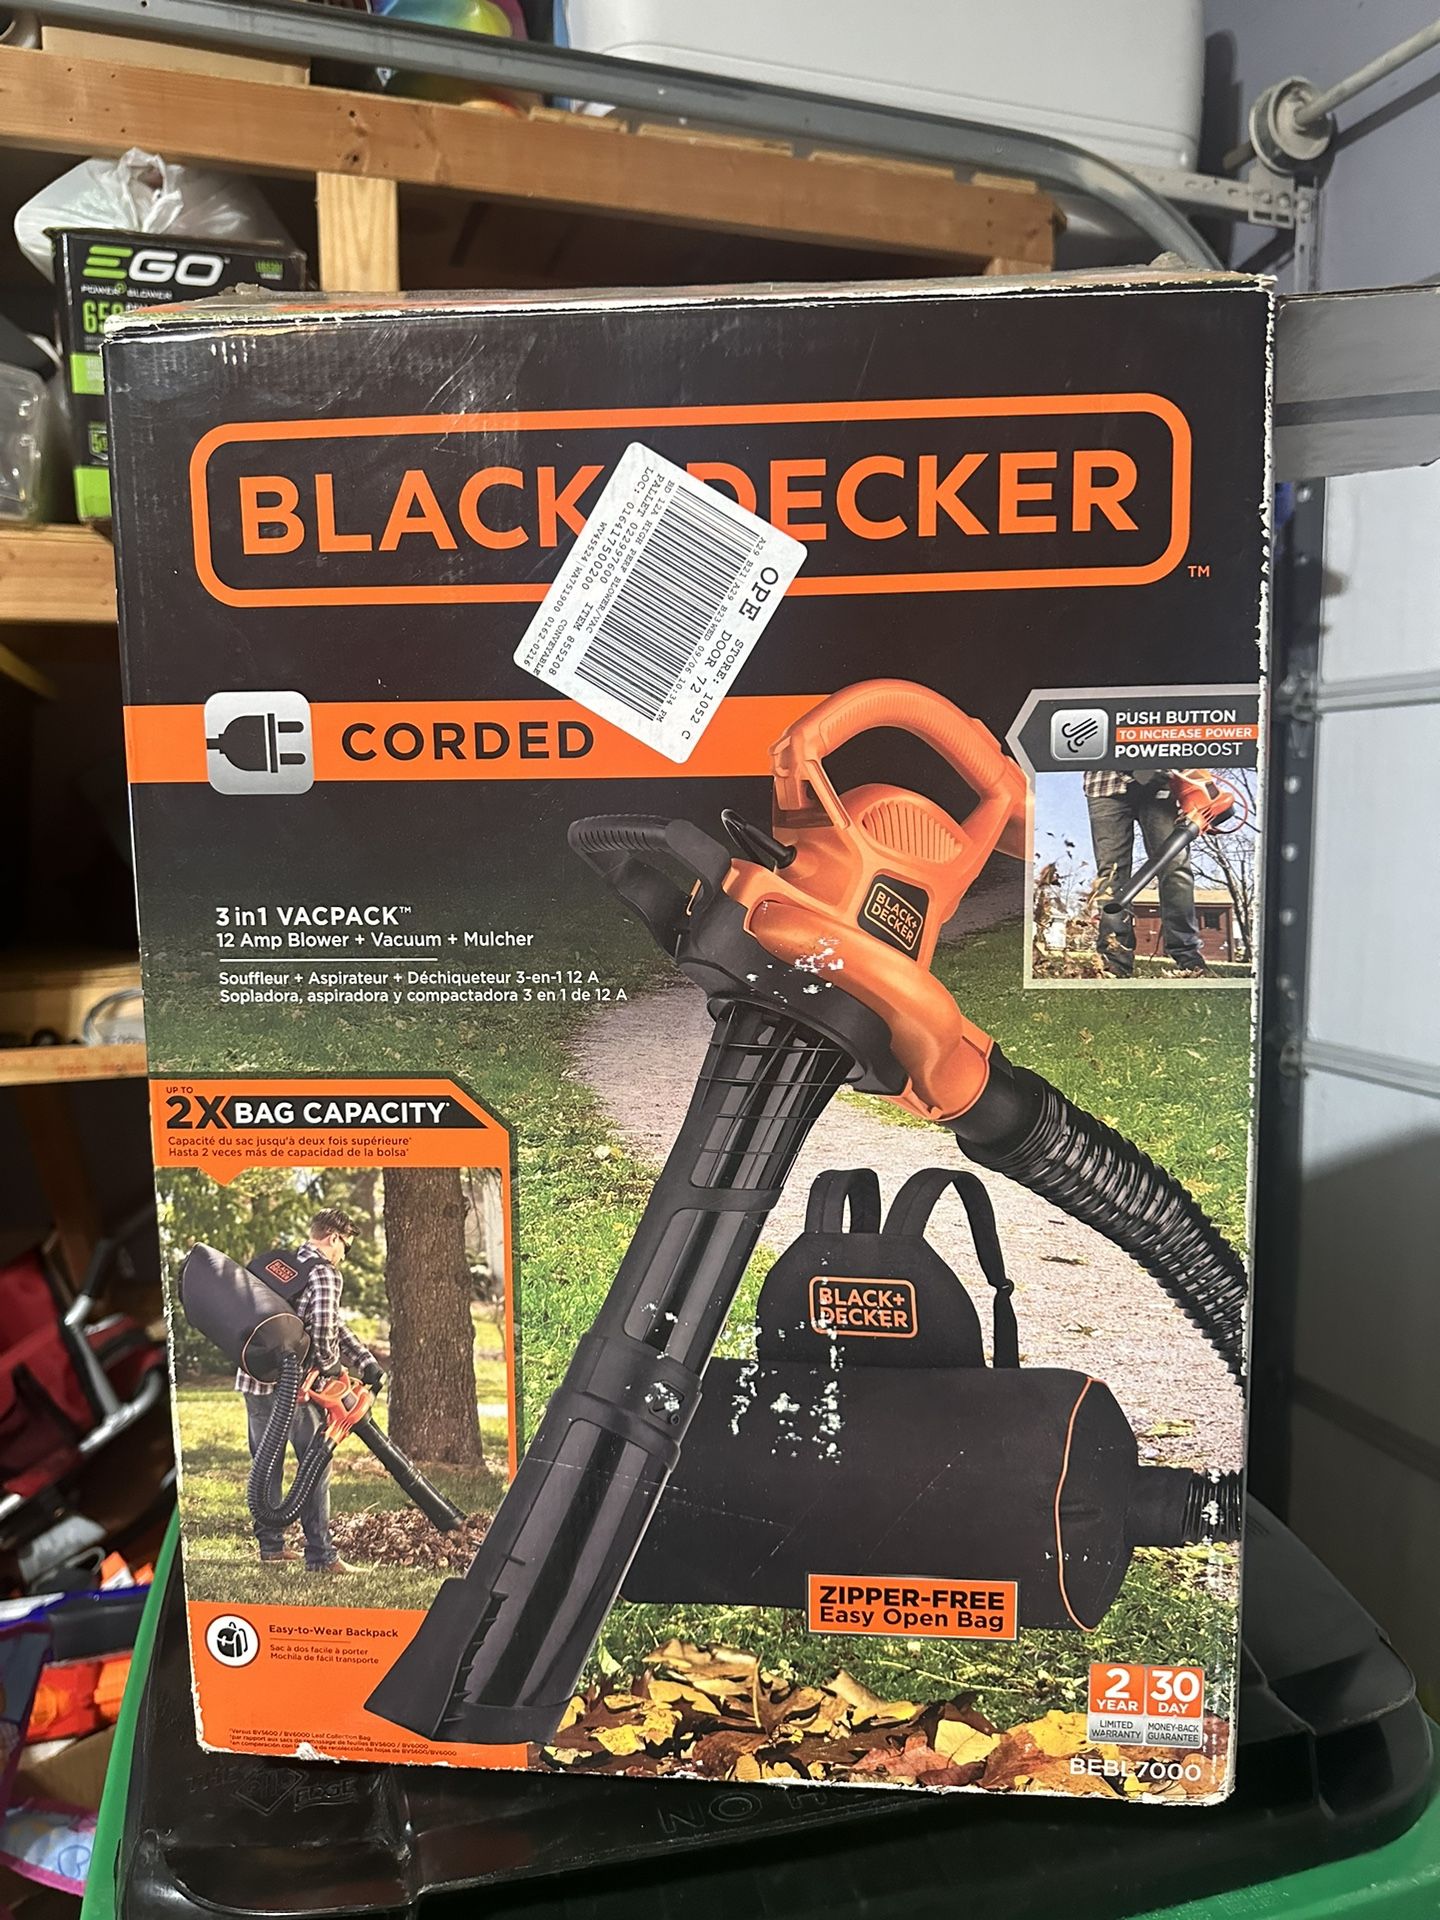 Black& Decker leaf blower/vac